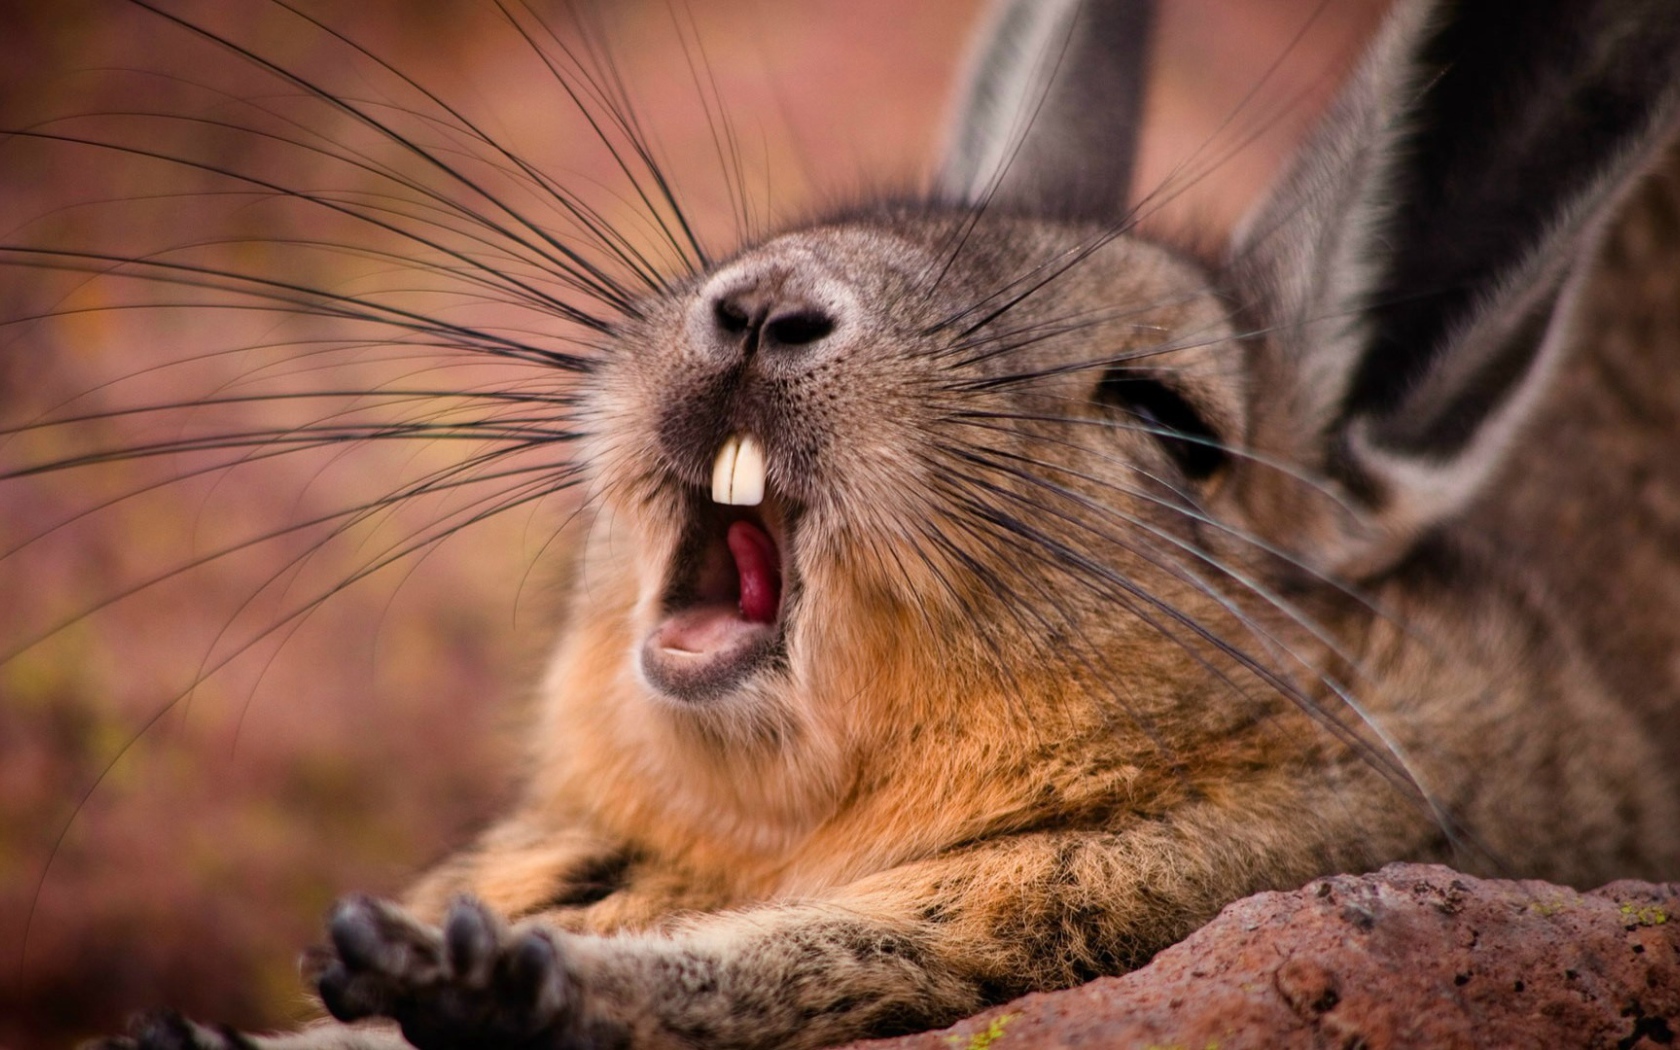 Wild rabbit yawns